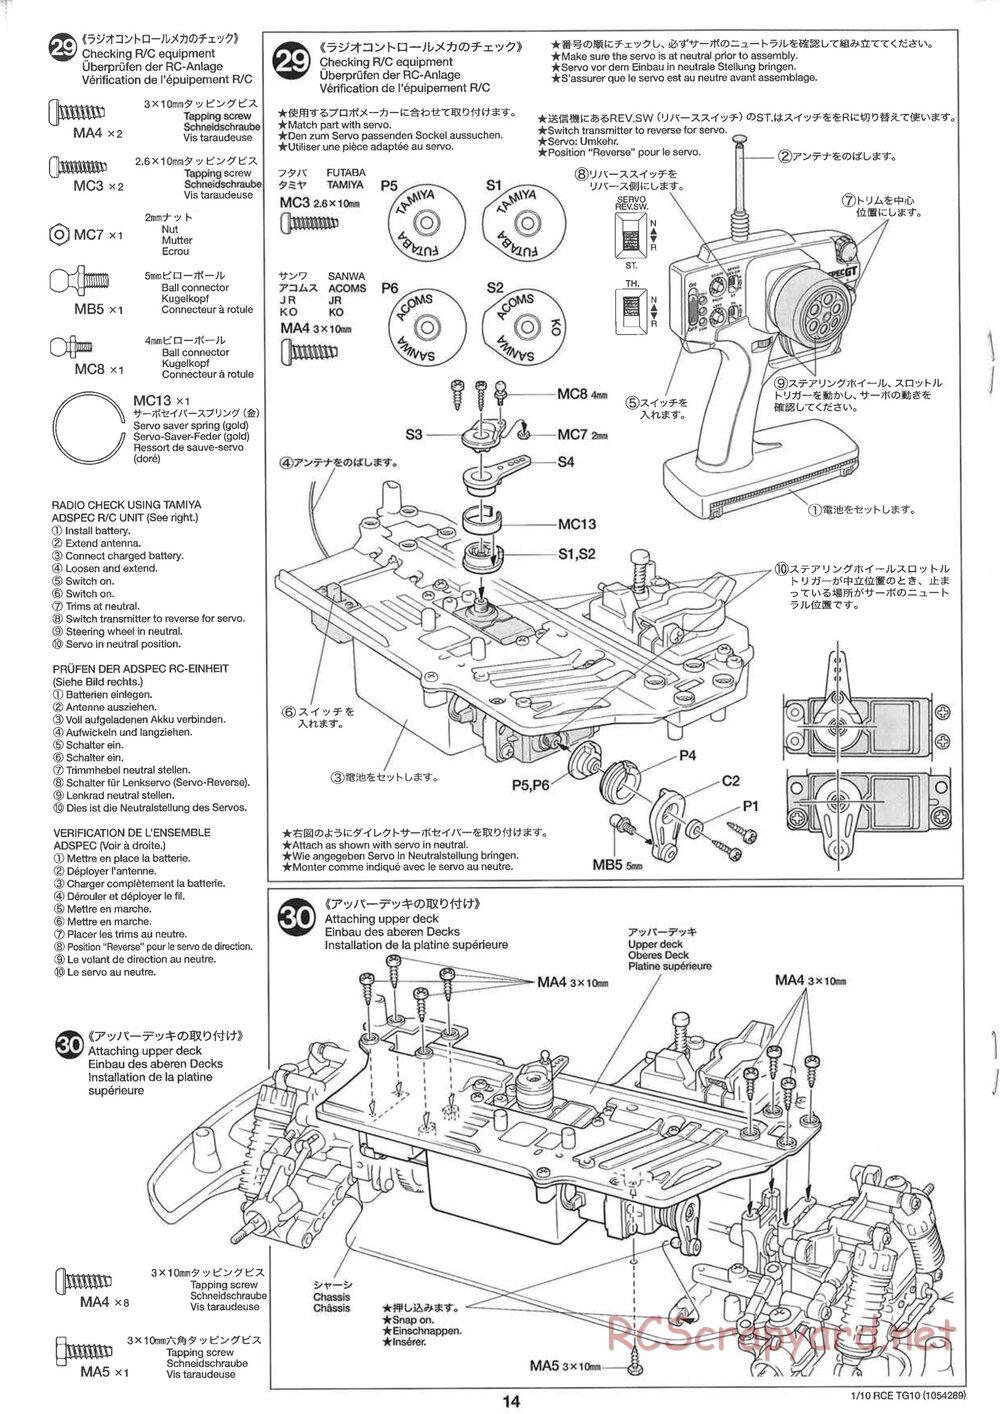 Tamiya - TG10 Mk.1 Chassis - Manual - Page 14